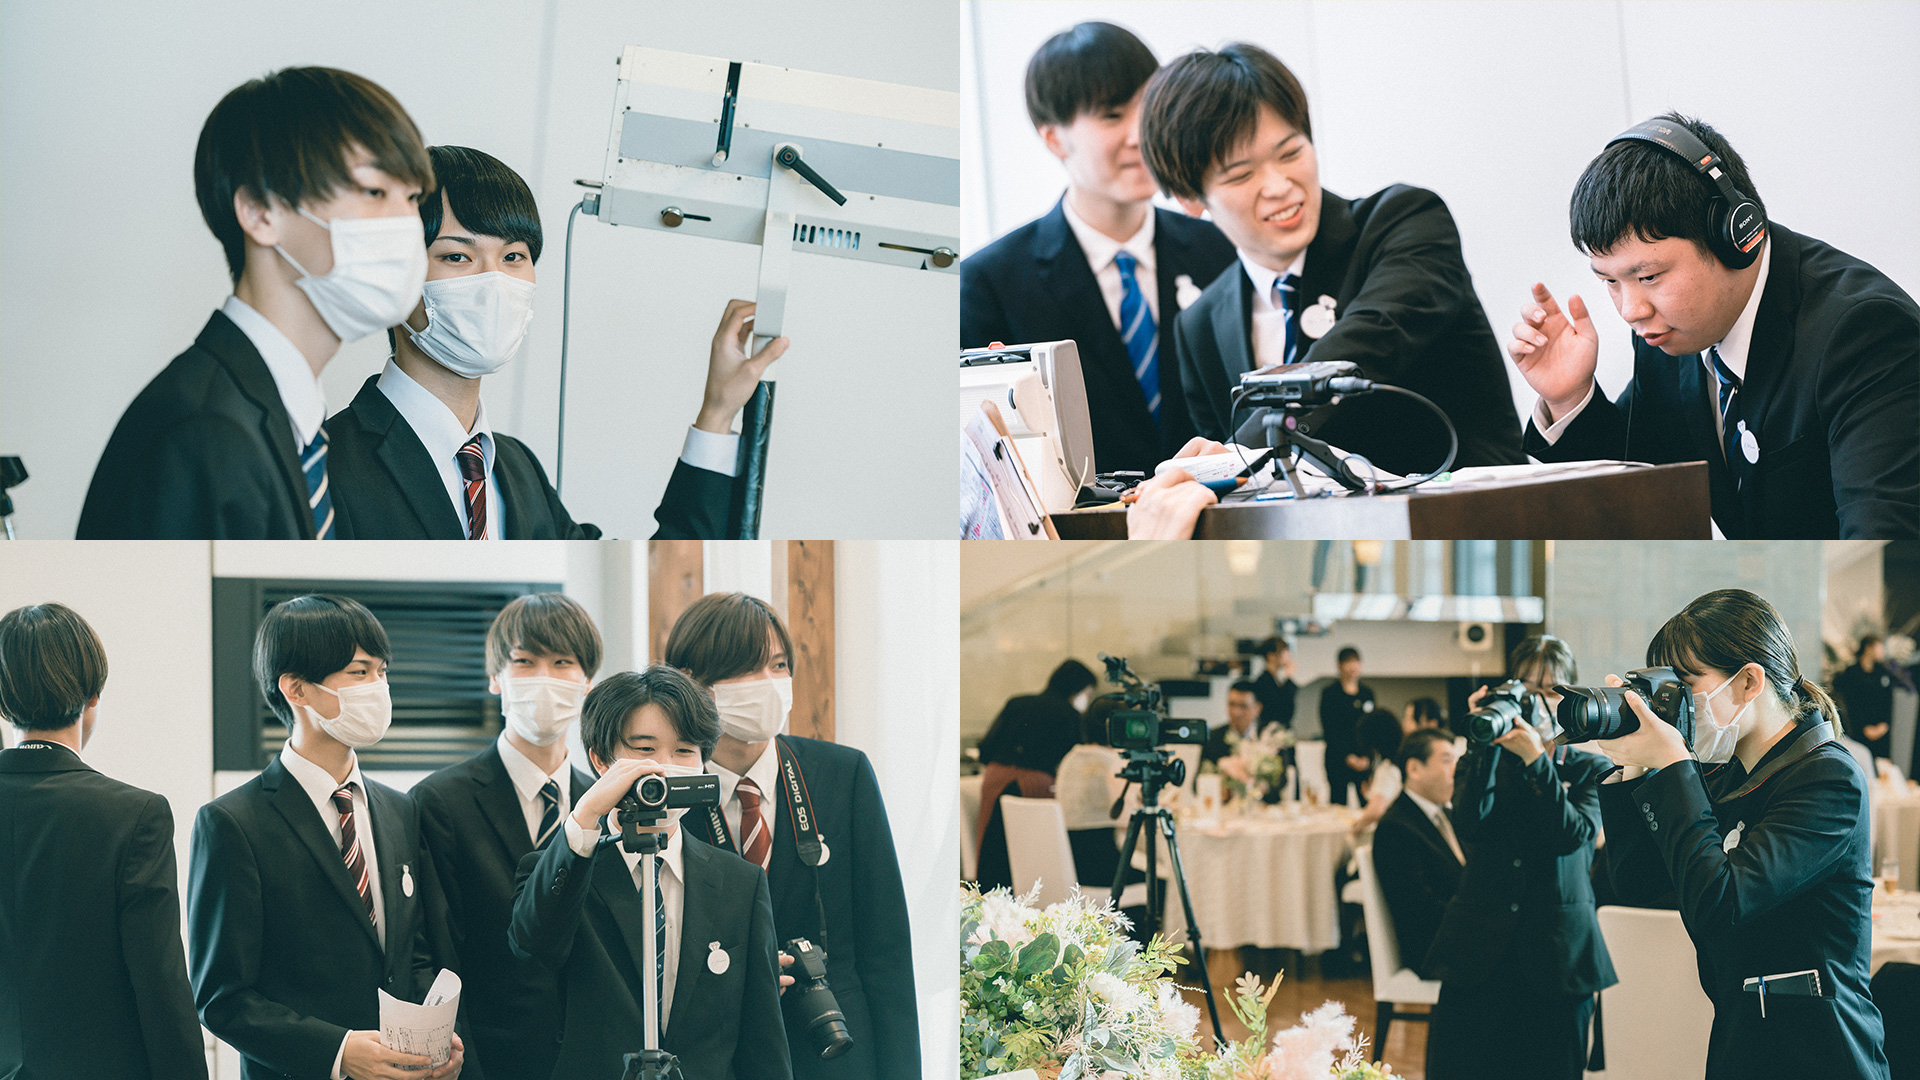 結婚式場でライトや音響設備の操作、カメラやビデオ撮影をしている学生たちの写真